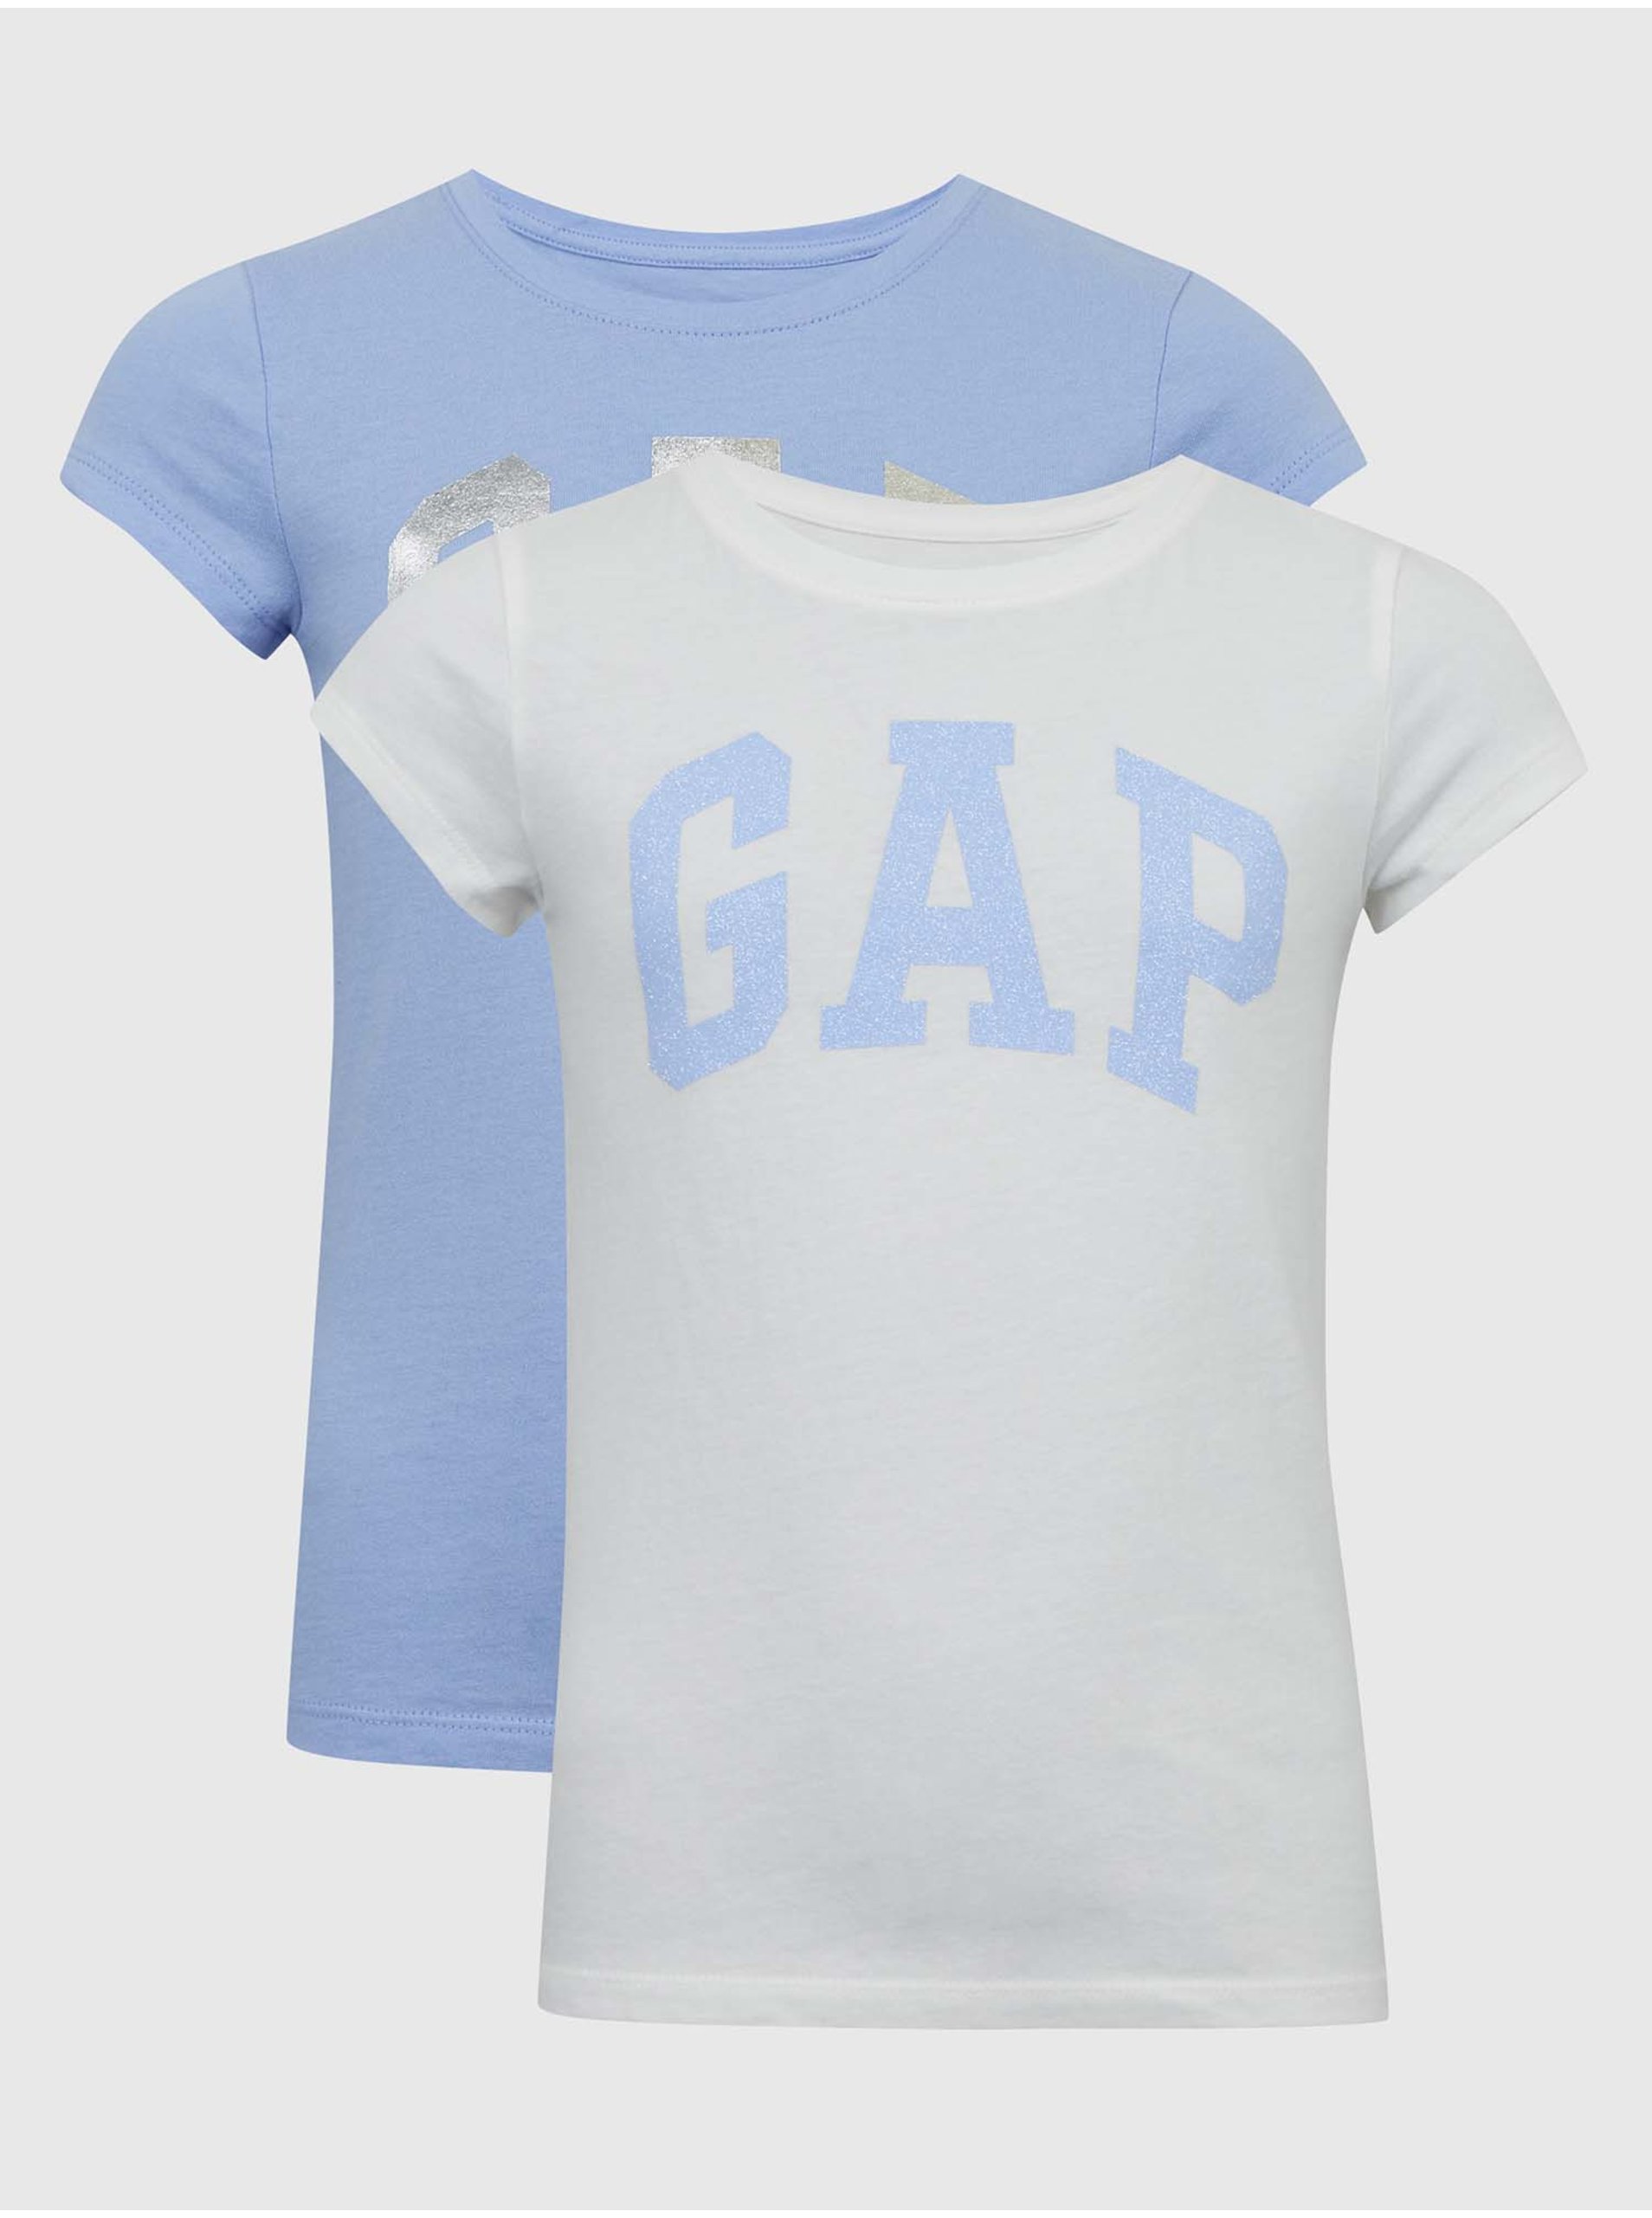 Lacno Modré dievčenské tričká logo GAP, 2ks